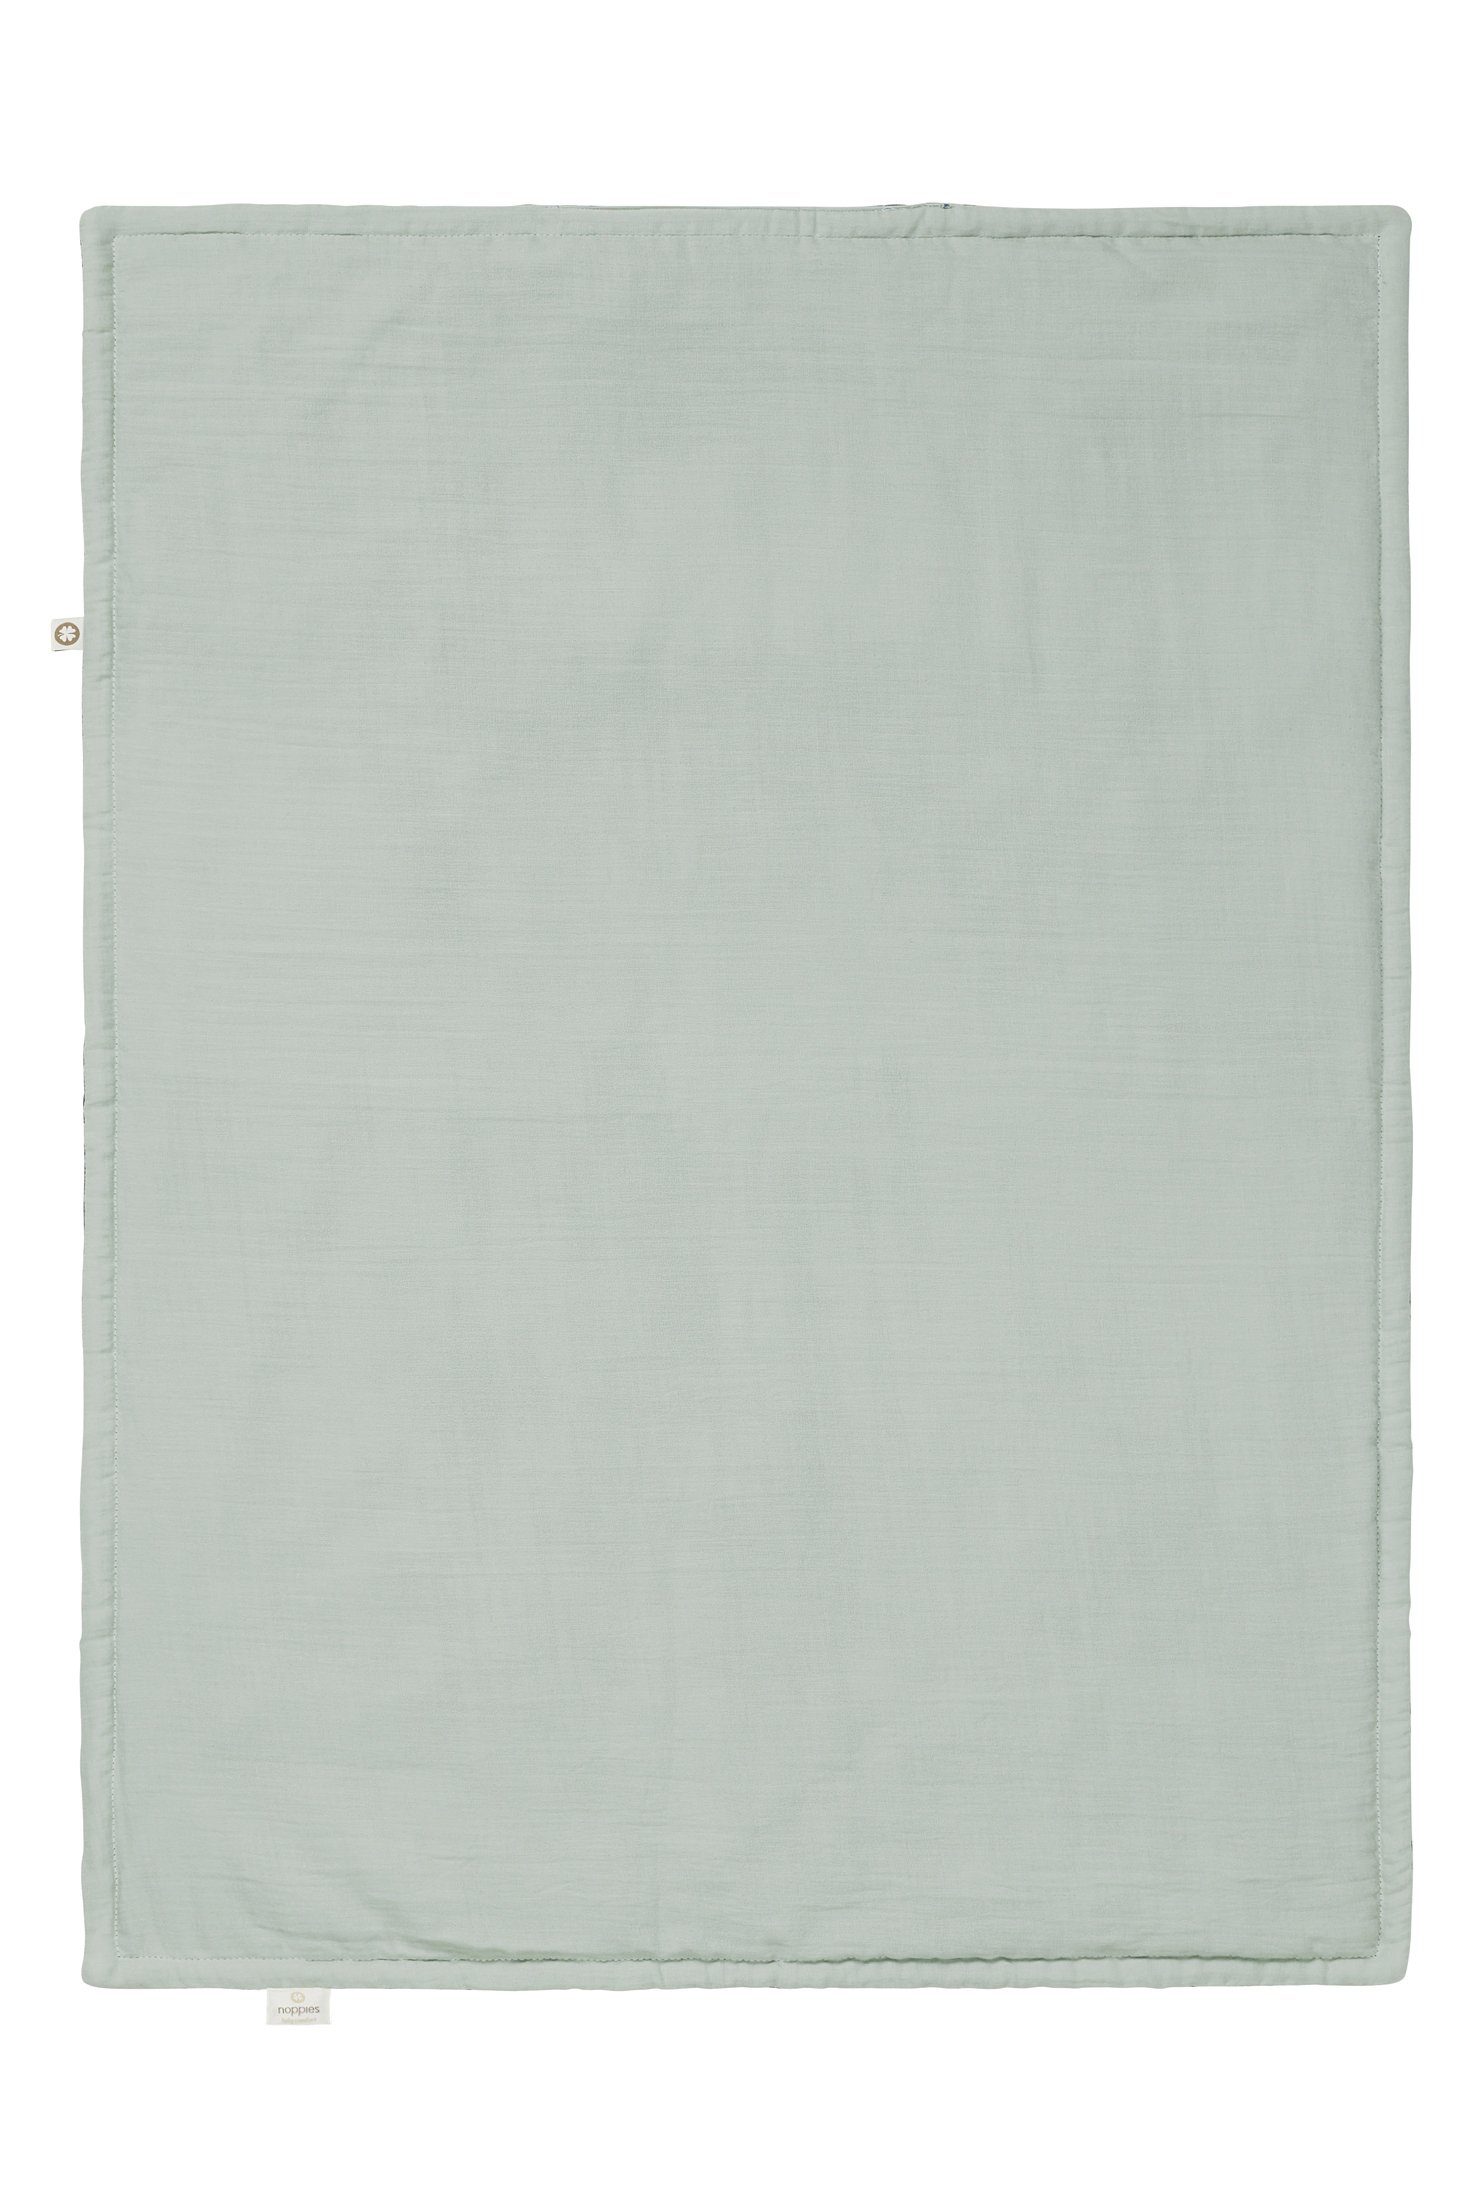 75x100 cm, Noppies Wiege Babydecke Gray Puritan Noppies die für Decke Filled